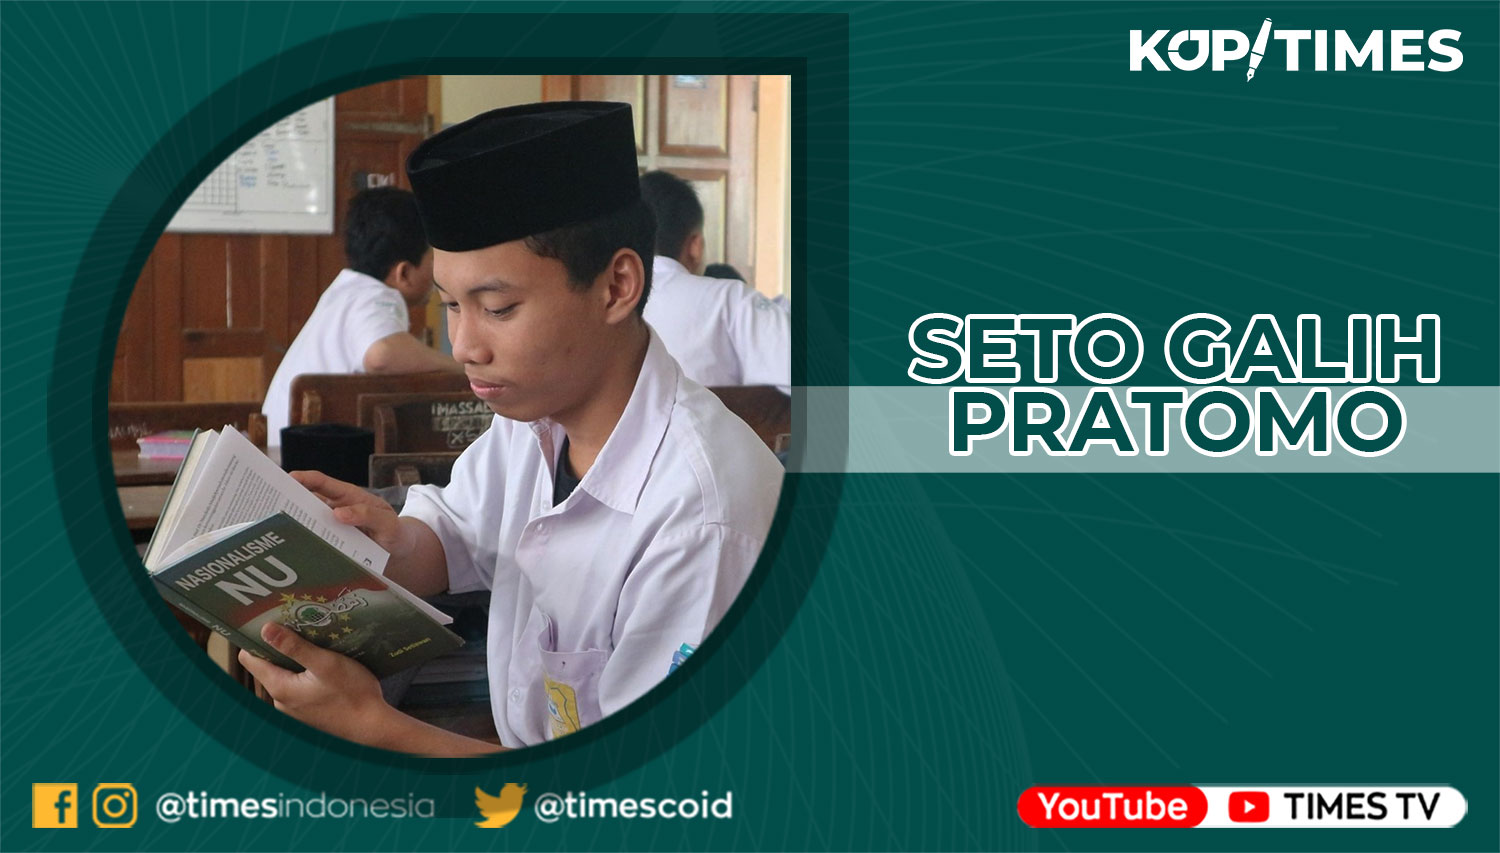 Seto Galih Pratomo, Alumni Pesantren Tebuireng Jombang; penulis buku “Nasionalisme Pemuda: Pemikiran-Pemikiran KH. Hasyim Asy’ari”; saat ini sebagai mahasiswa Fakultas Hukum Universitas Islam Indonesia (UII); juga sebagai CEO SEGAPMedia Group.